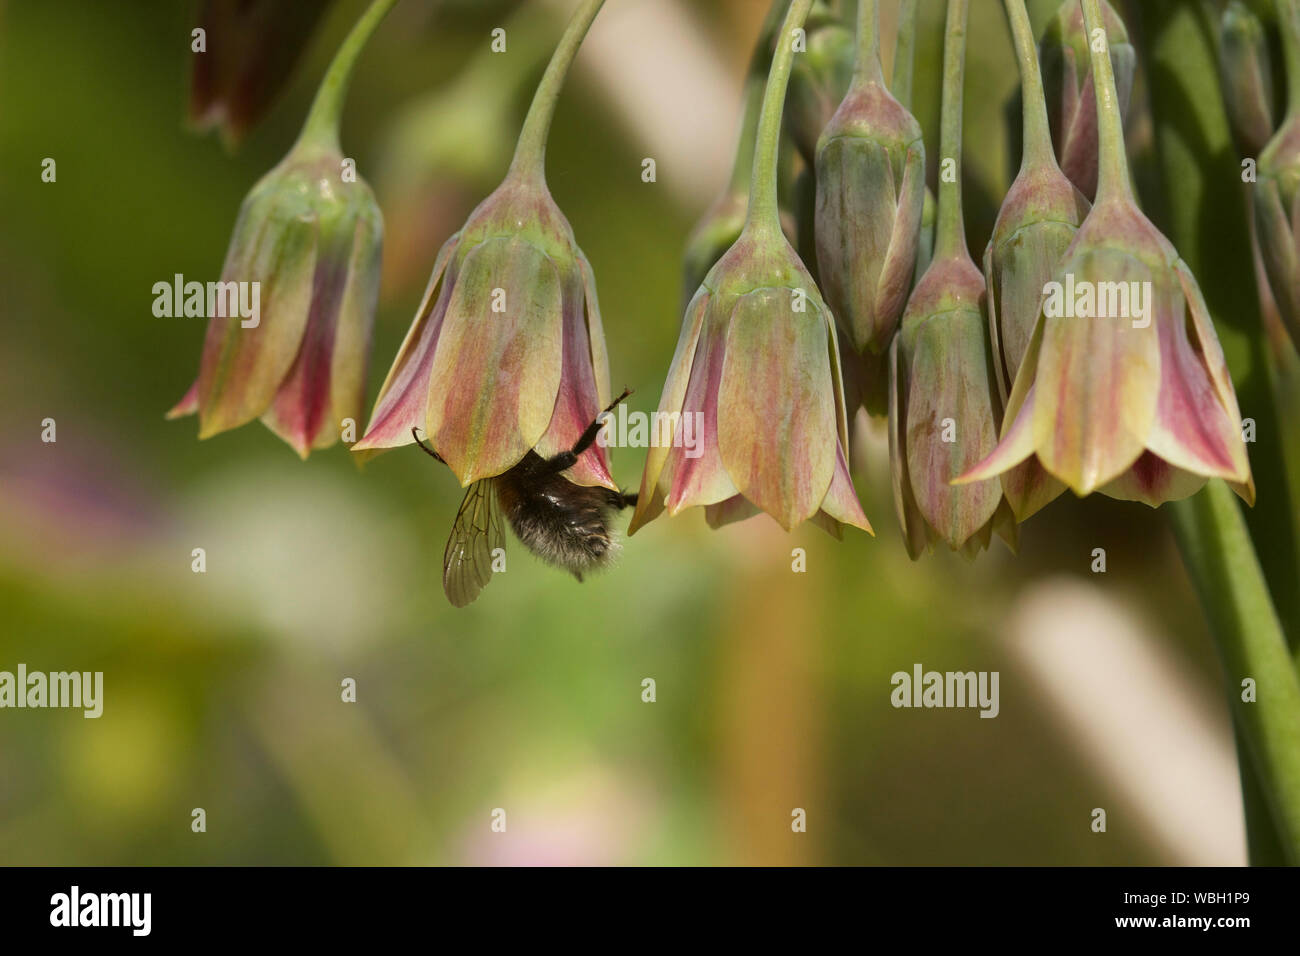 Bumblebee visiting ornamental allium / Bombus visiting Allium bulgaricum Stock Photo